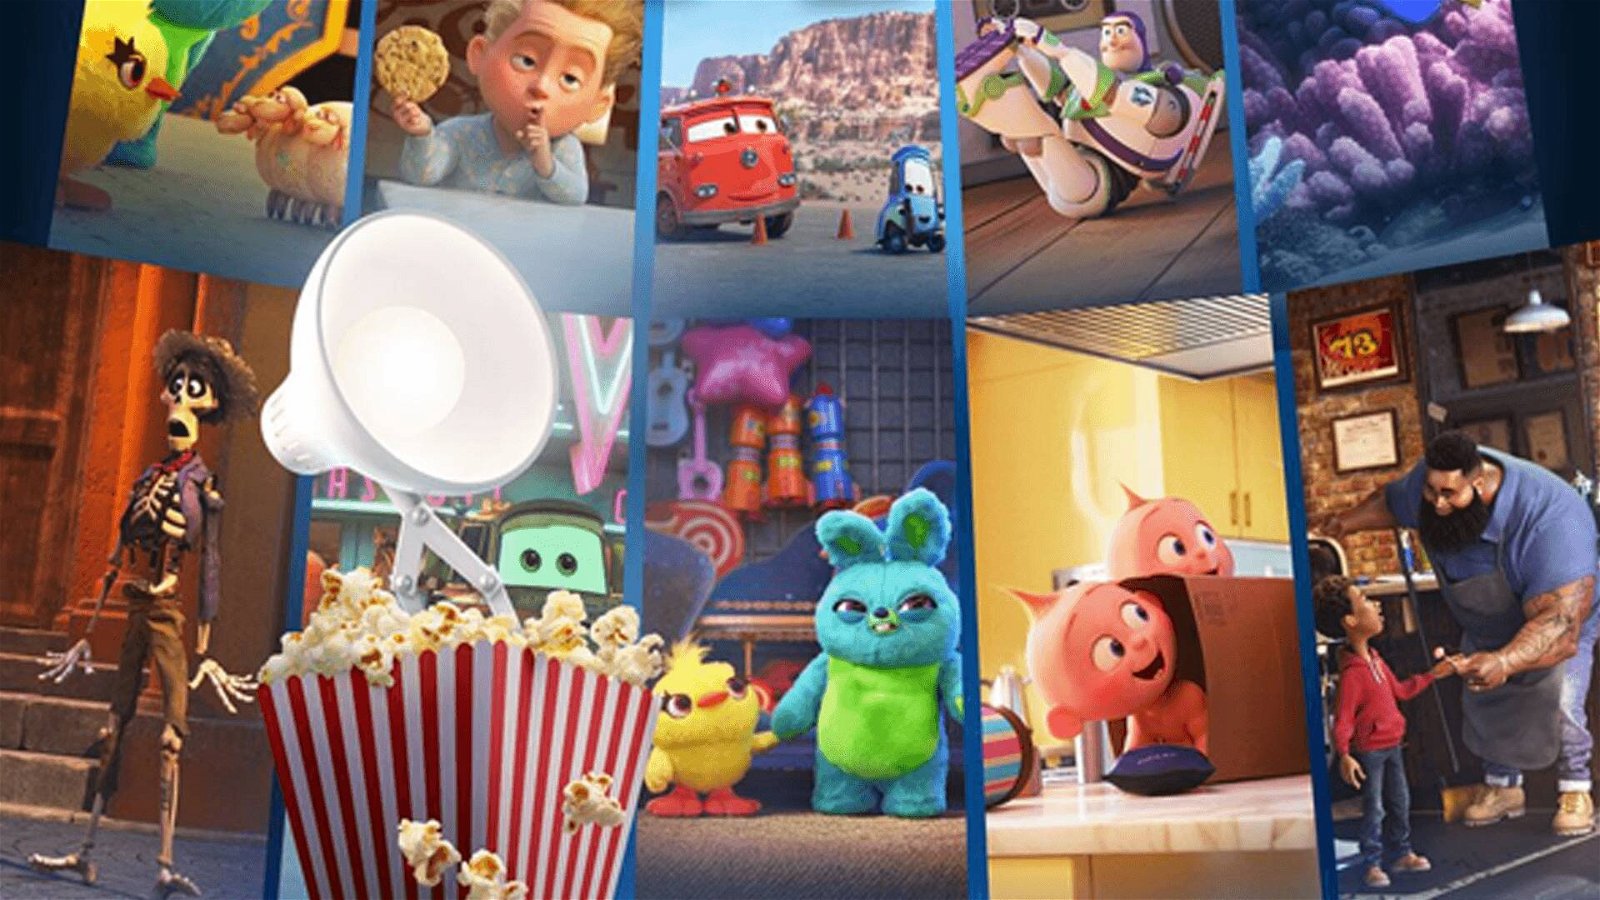 Immagine di Pixar Popcorn: Disney+ mostra il trailer dei nuovi corti Pixar